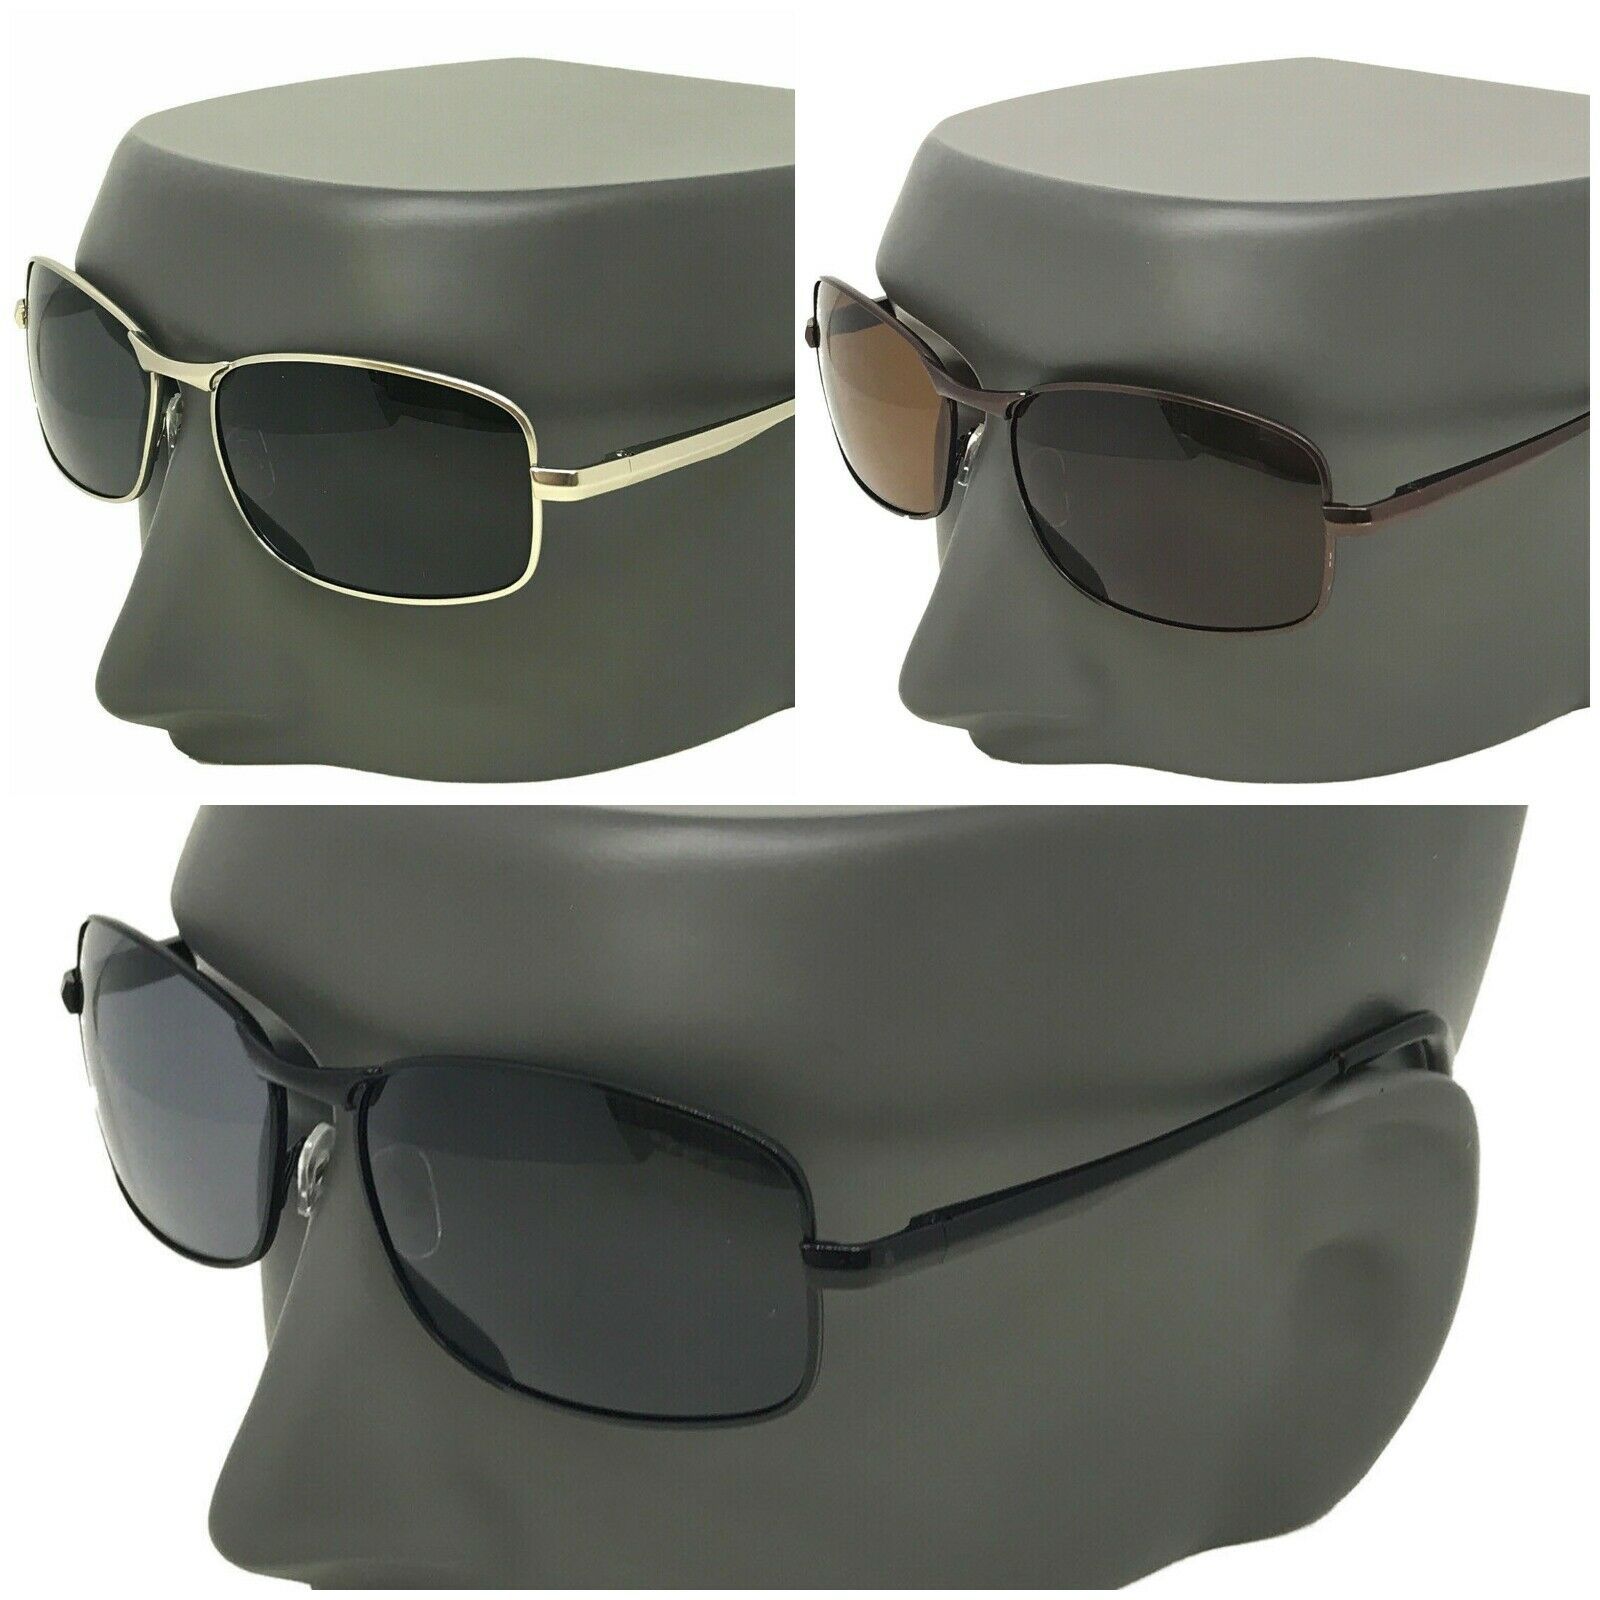 Unbranded - Gafas de sol para hombre lentes redondo piloto conducción moda verano lujo uv400